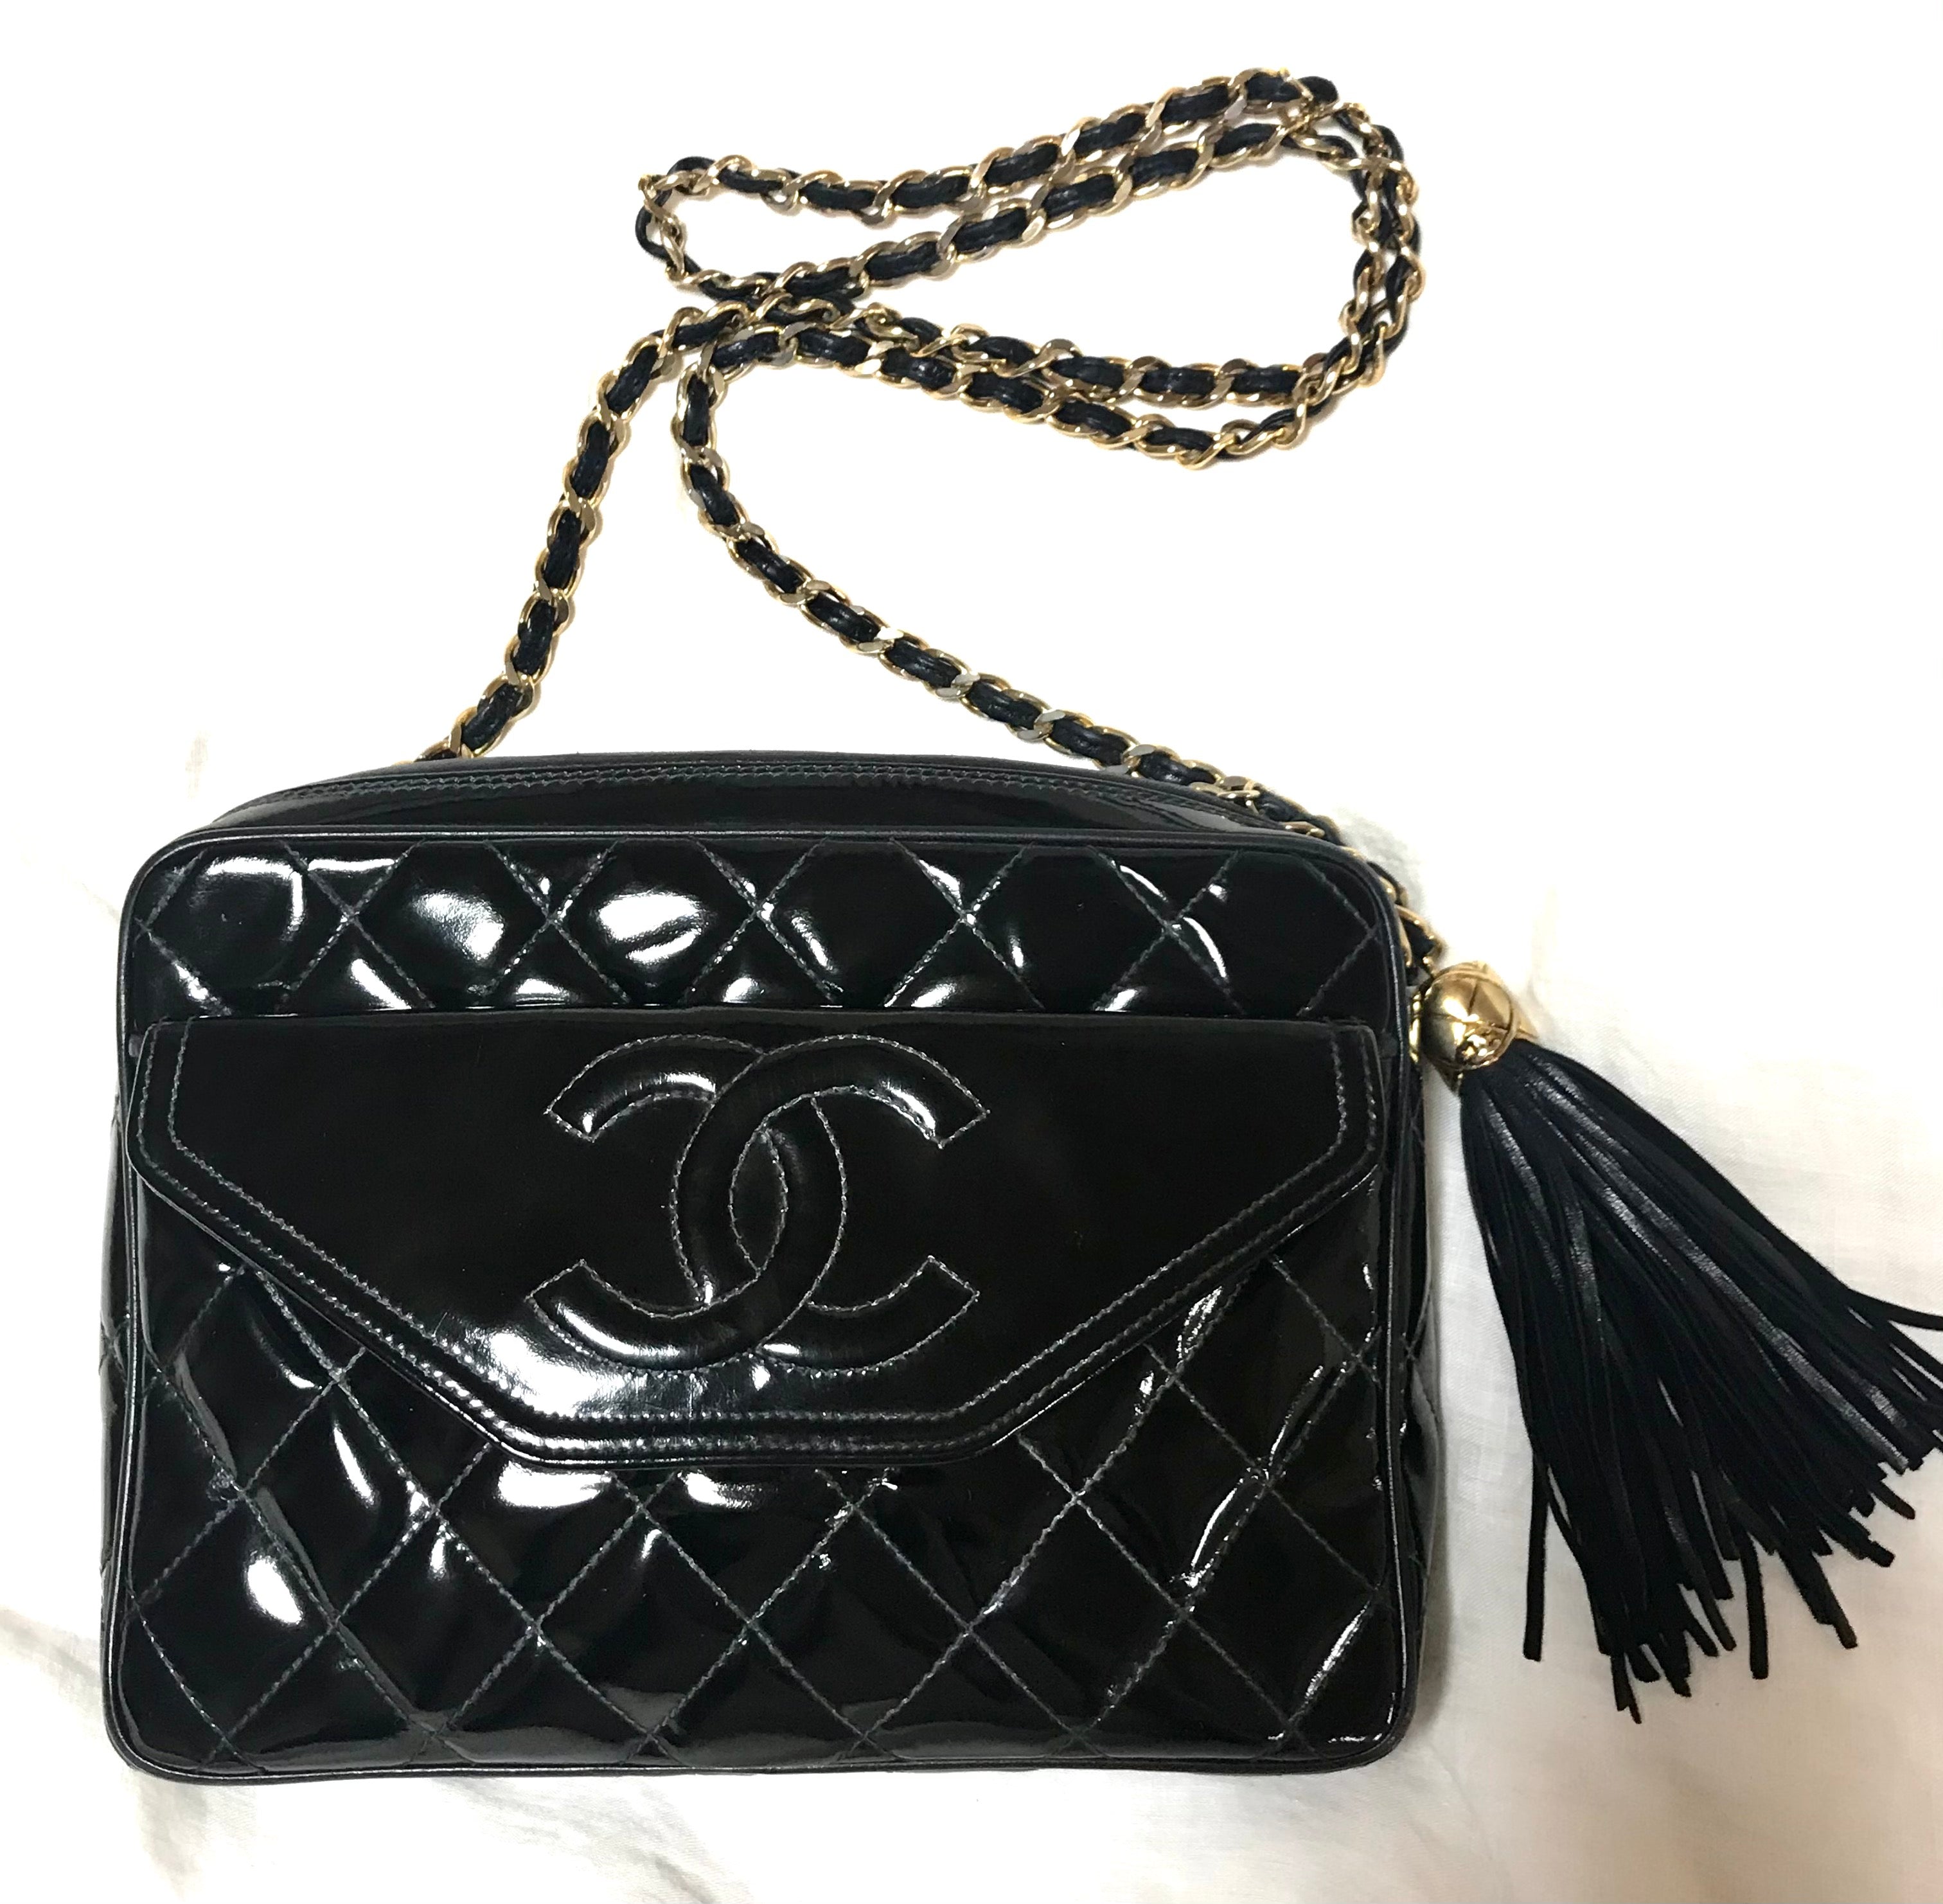 Vintage Chanel Single Flap Bag with Tassel - Black